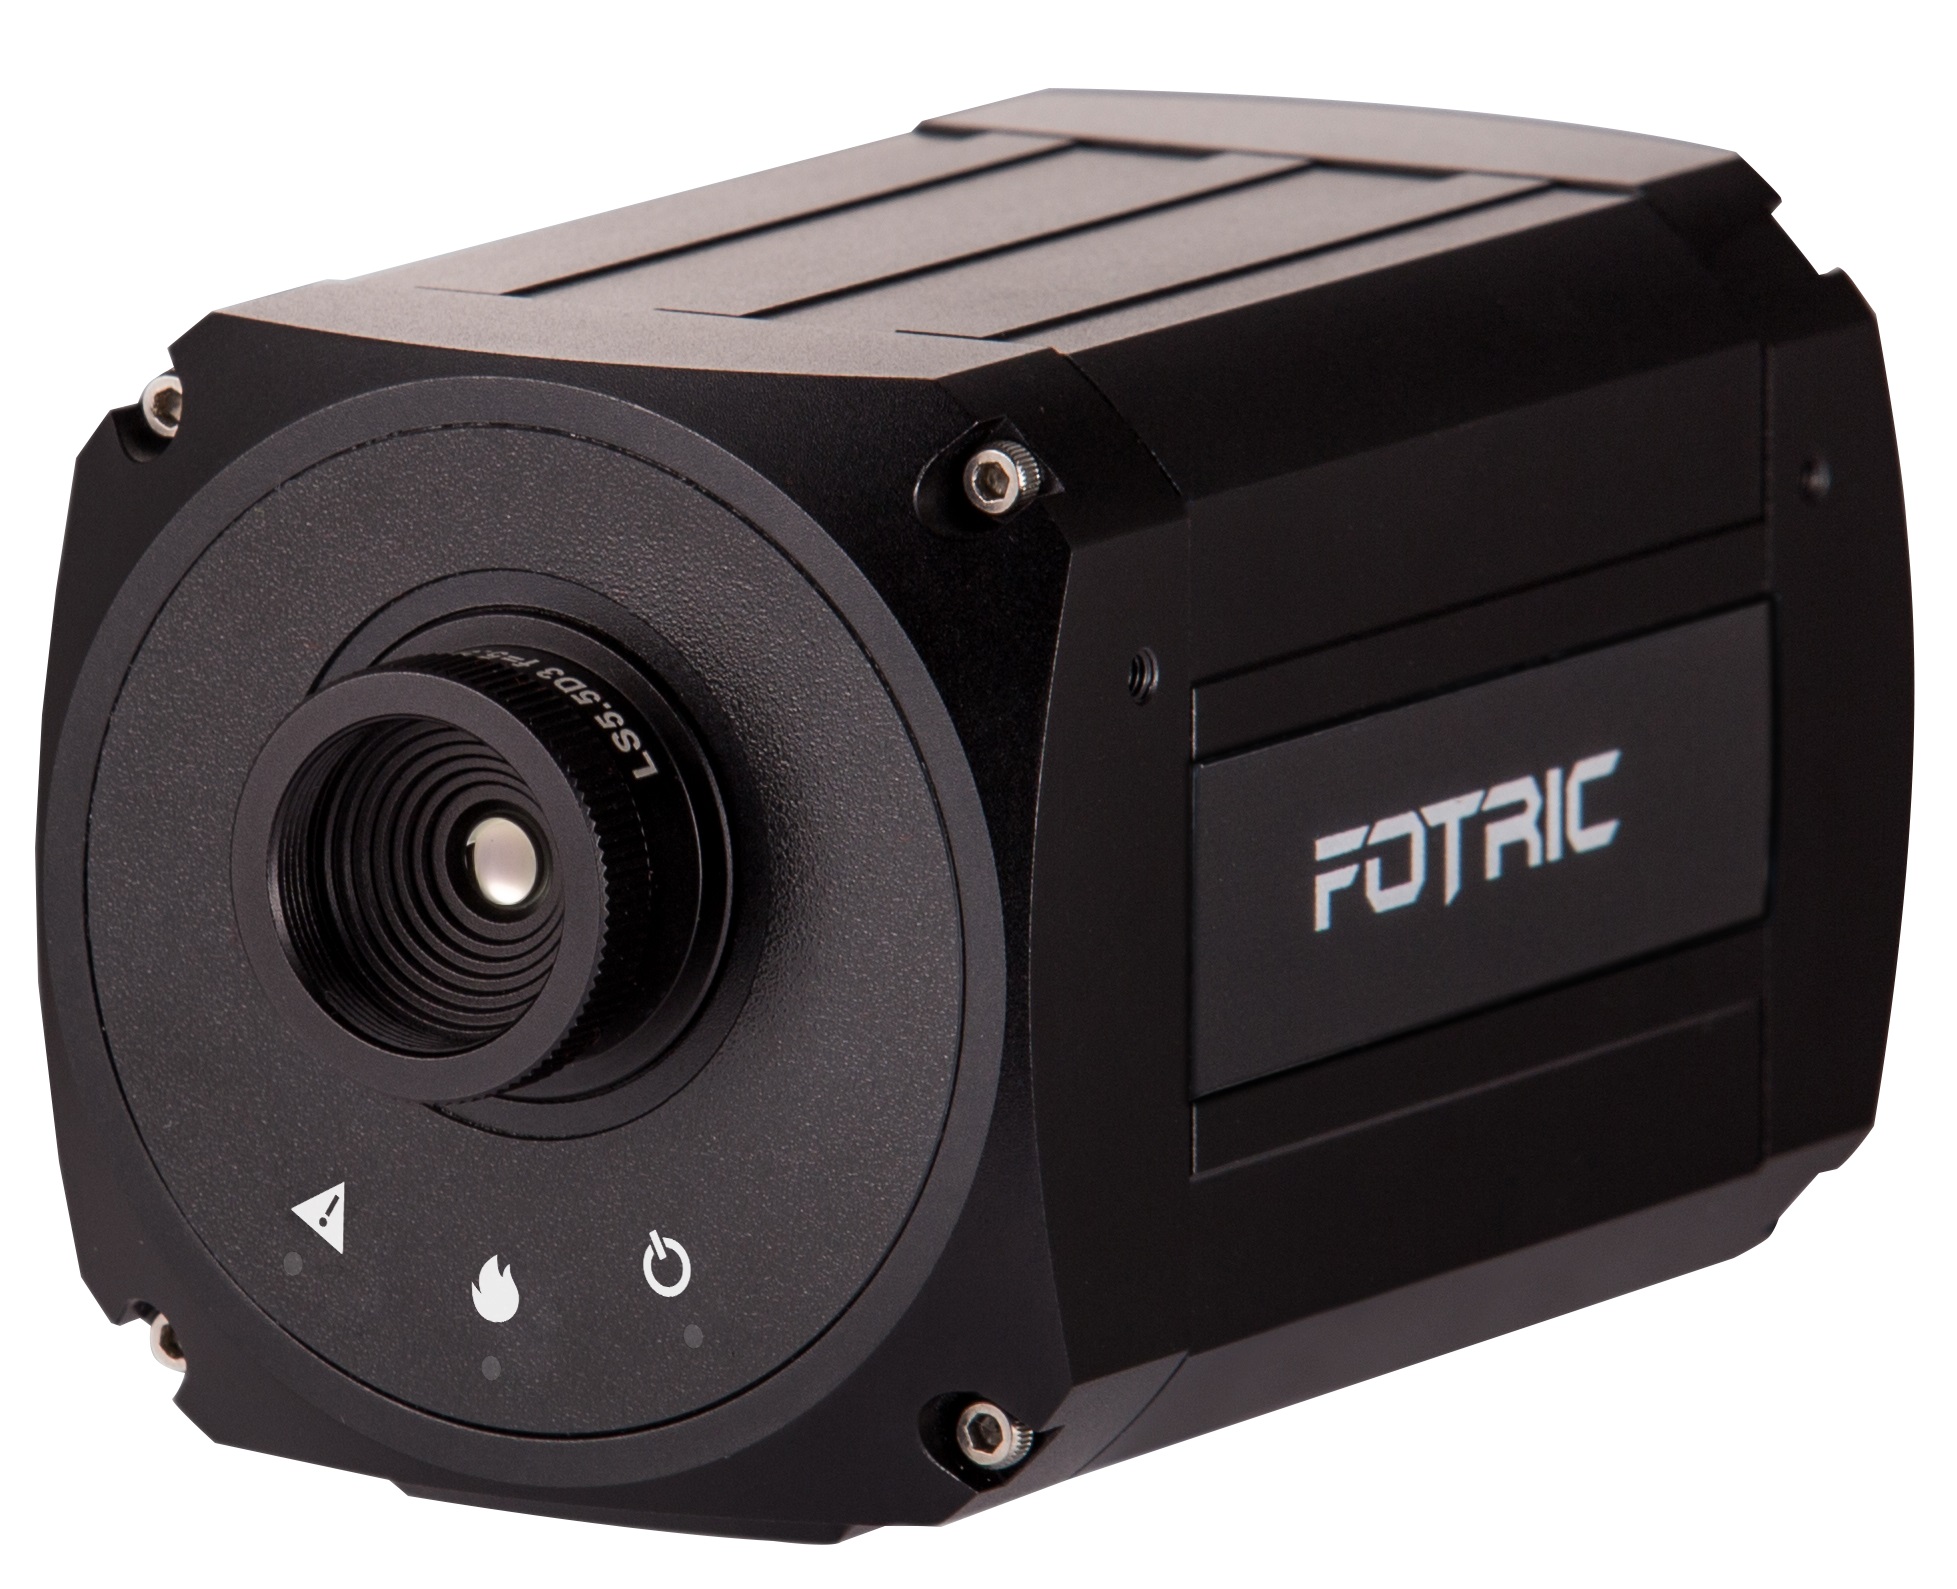 FOTRIC 800系列 防火报警智能热像